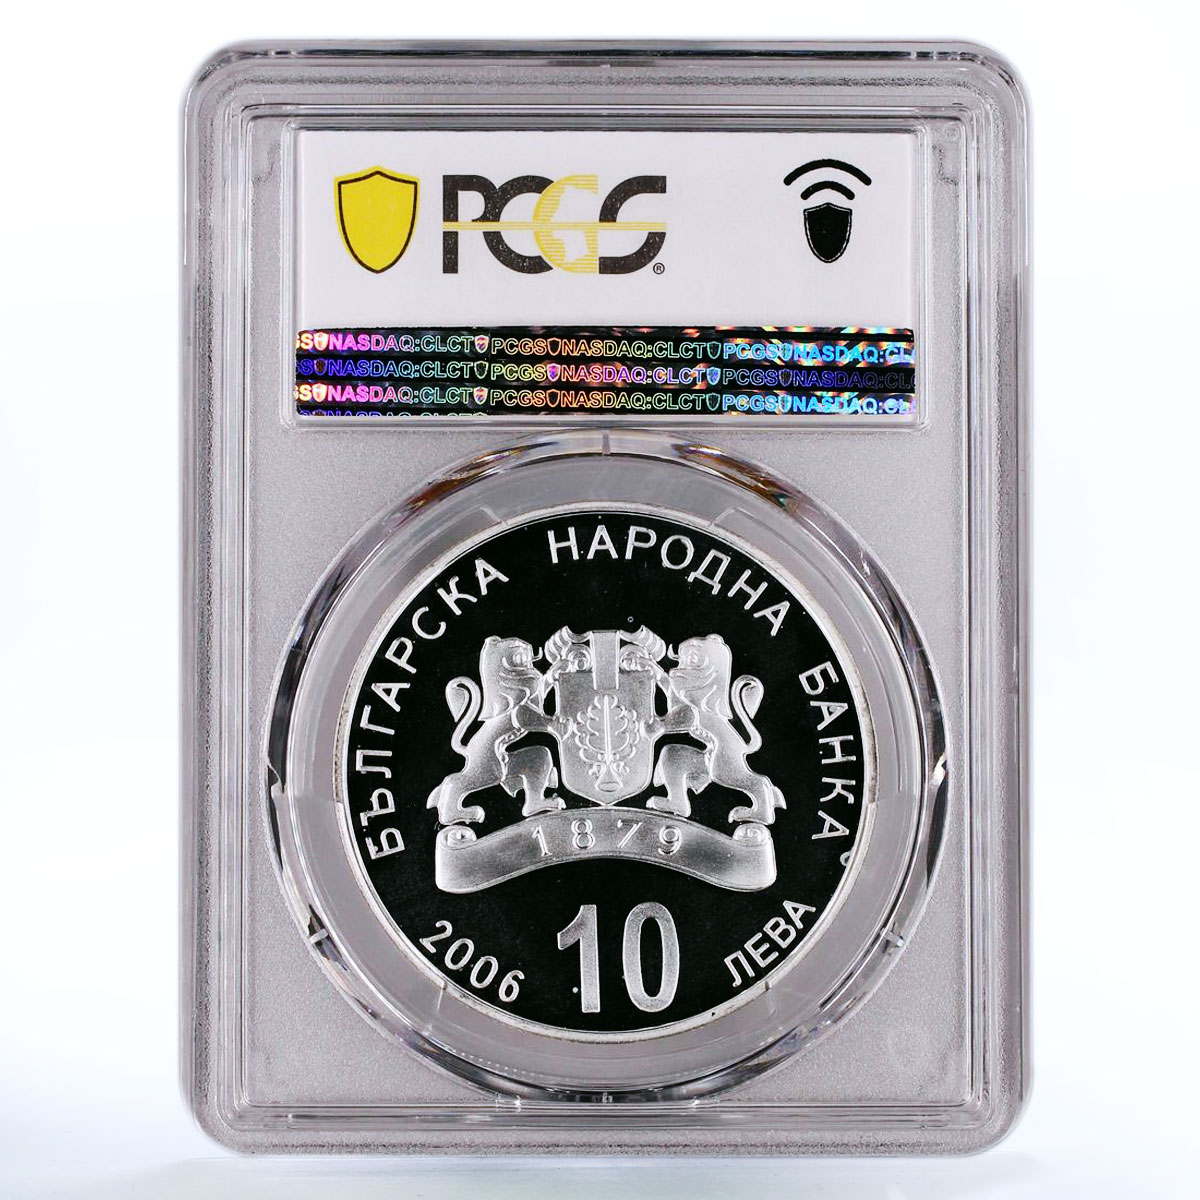 Bulgaria 10 leva The Black Sea Coast Nature Reserve PR68 PCGS silver coin 2006